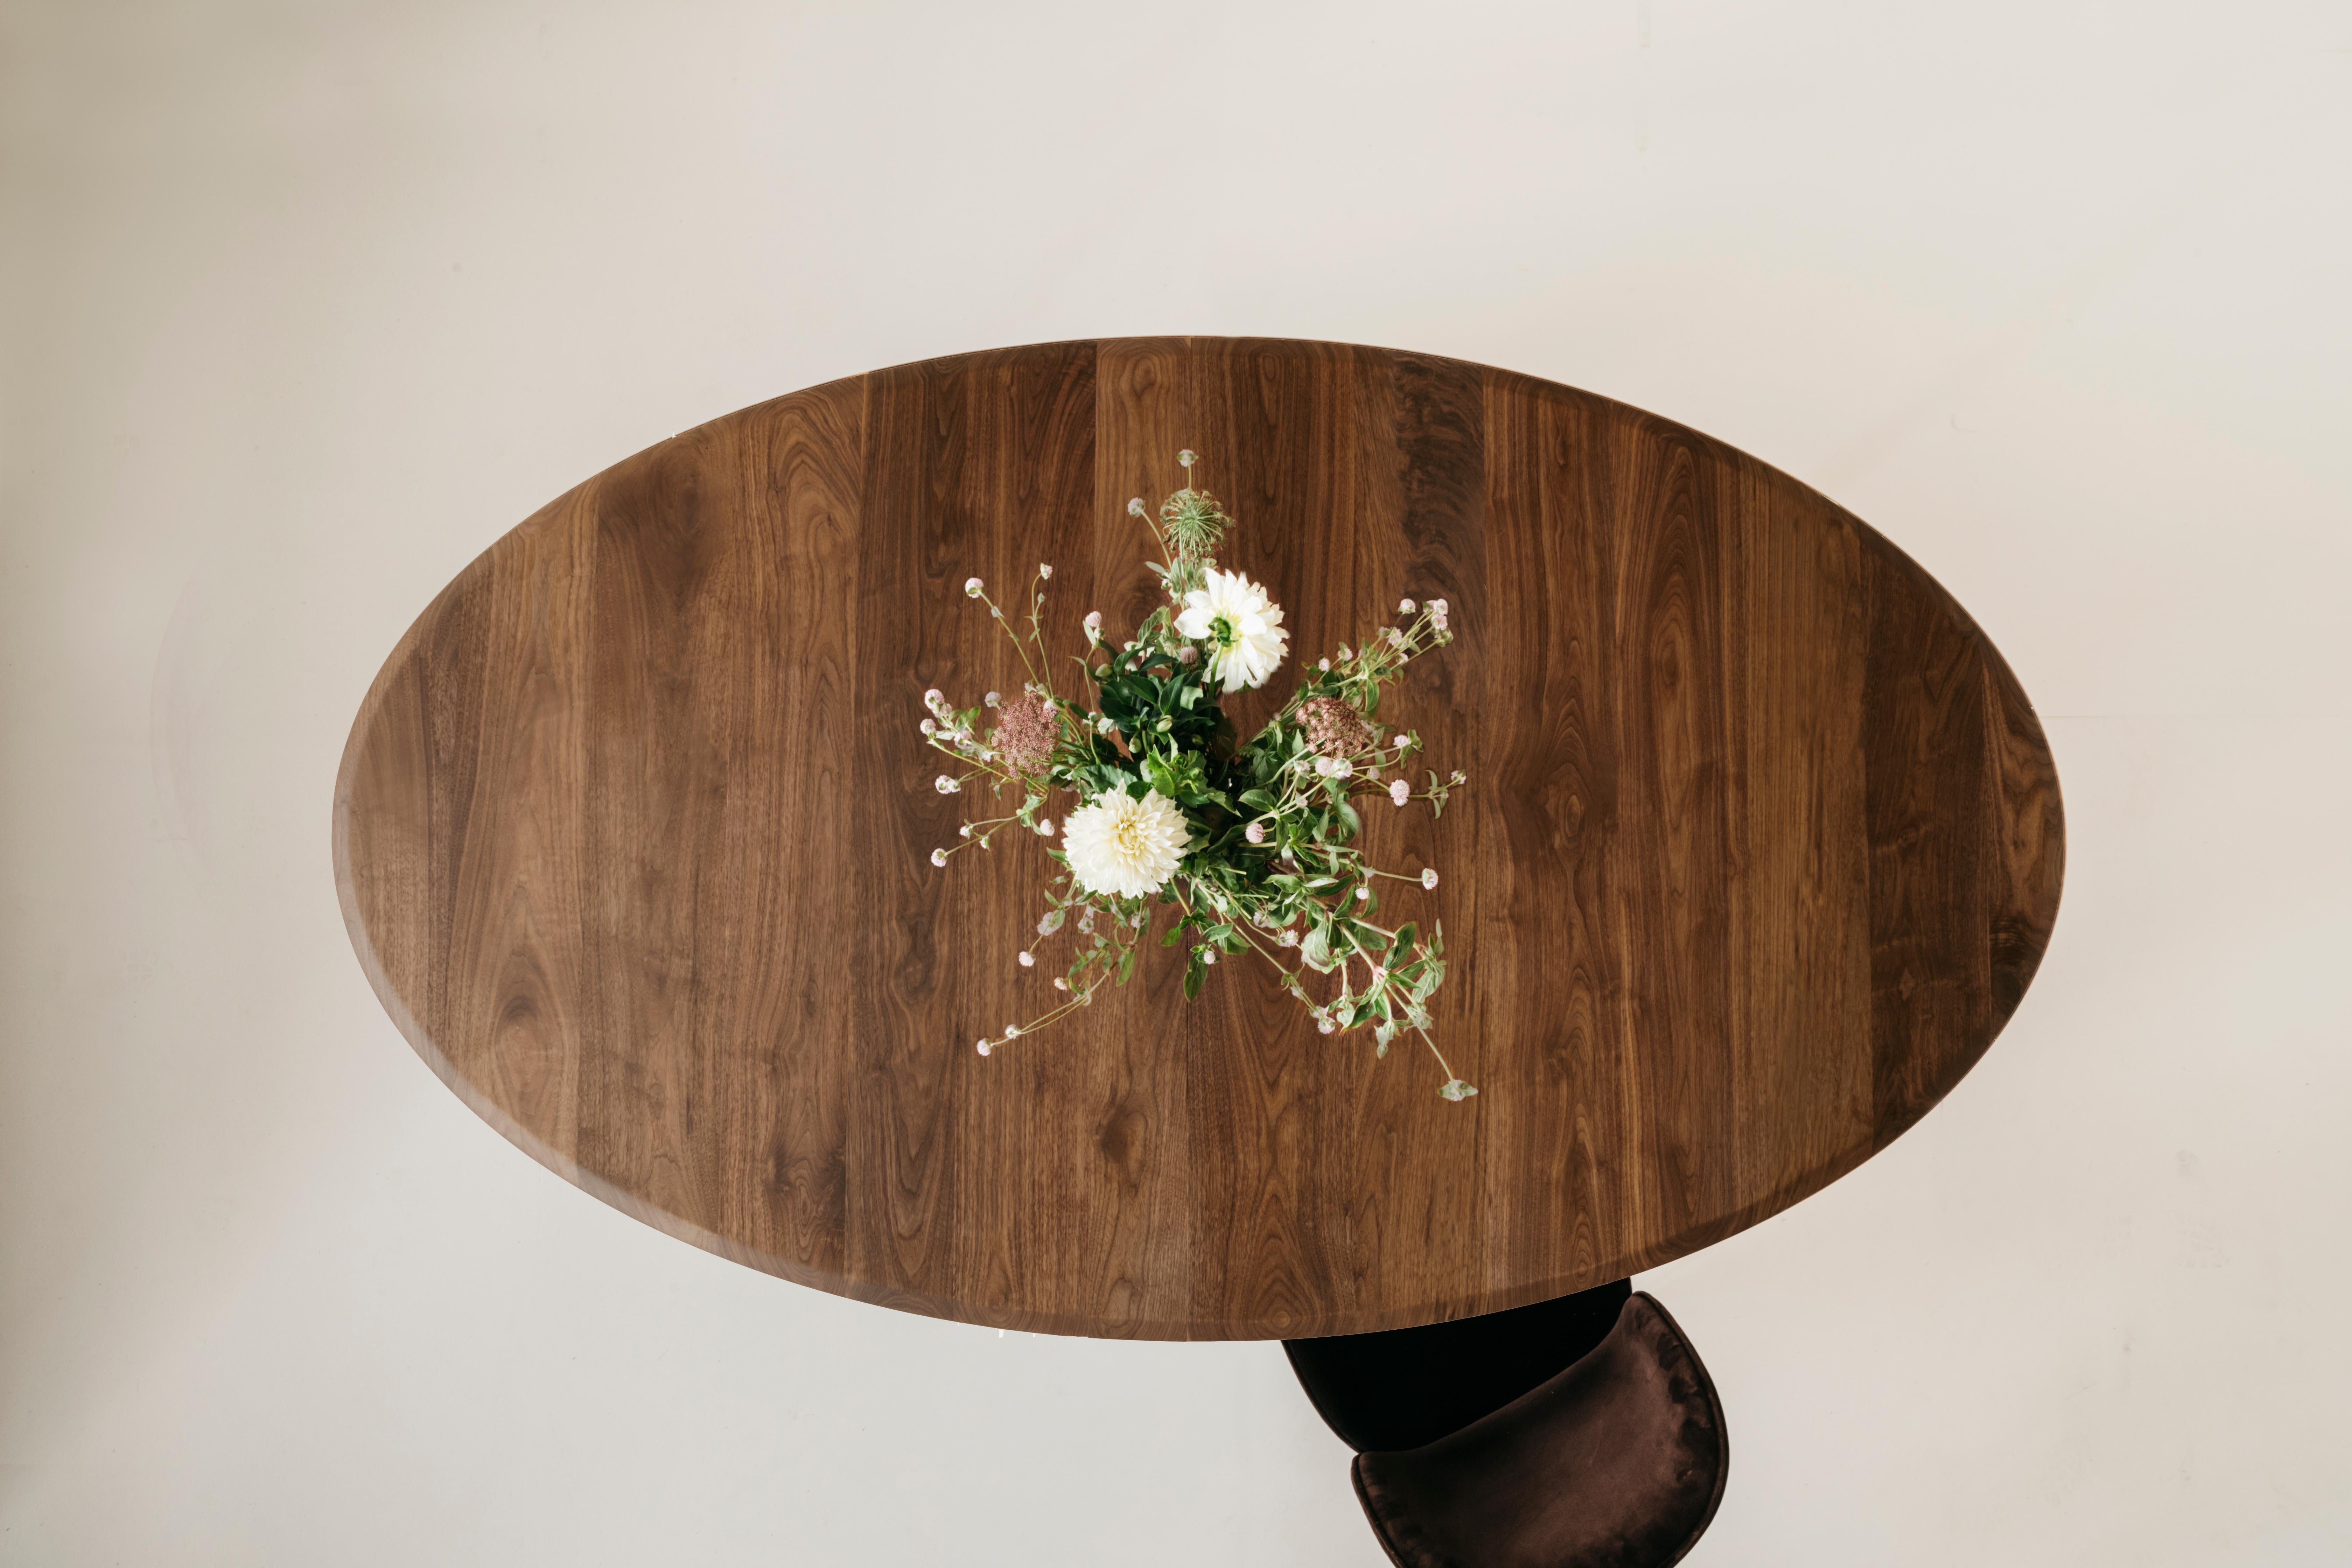 La table à manger ovale Richard Watson offre une forme confortable et intime pour dîner avec d'autres personnes. Cette table peut être rallongée à l'aide d'une rallonge lisse qui peut accueillir une feuille de 20 pouces,

Chaque pièce Richard